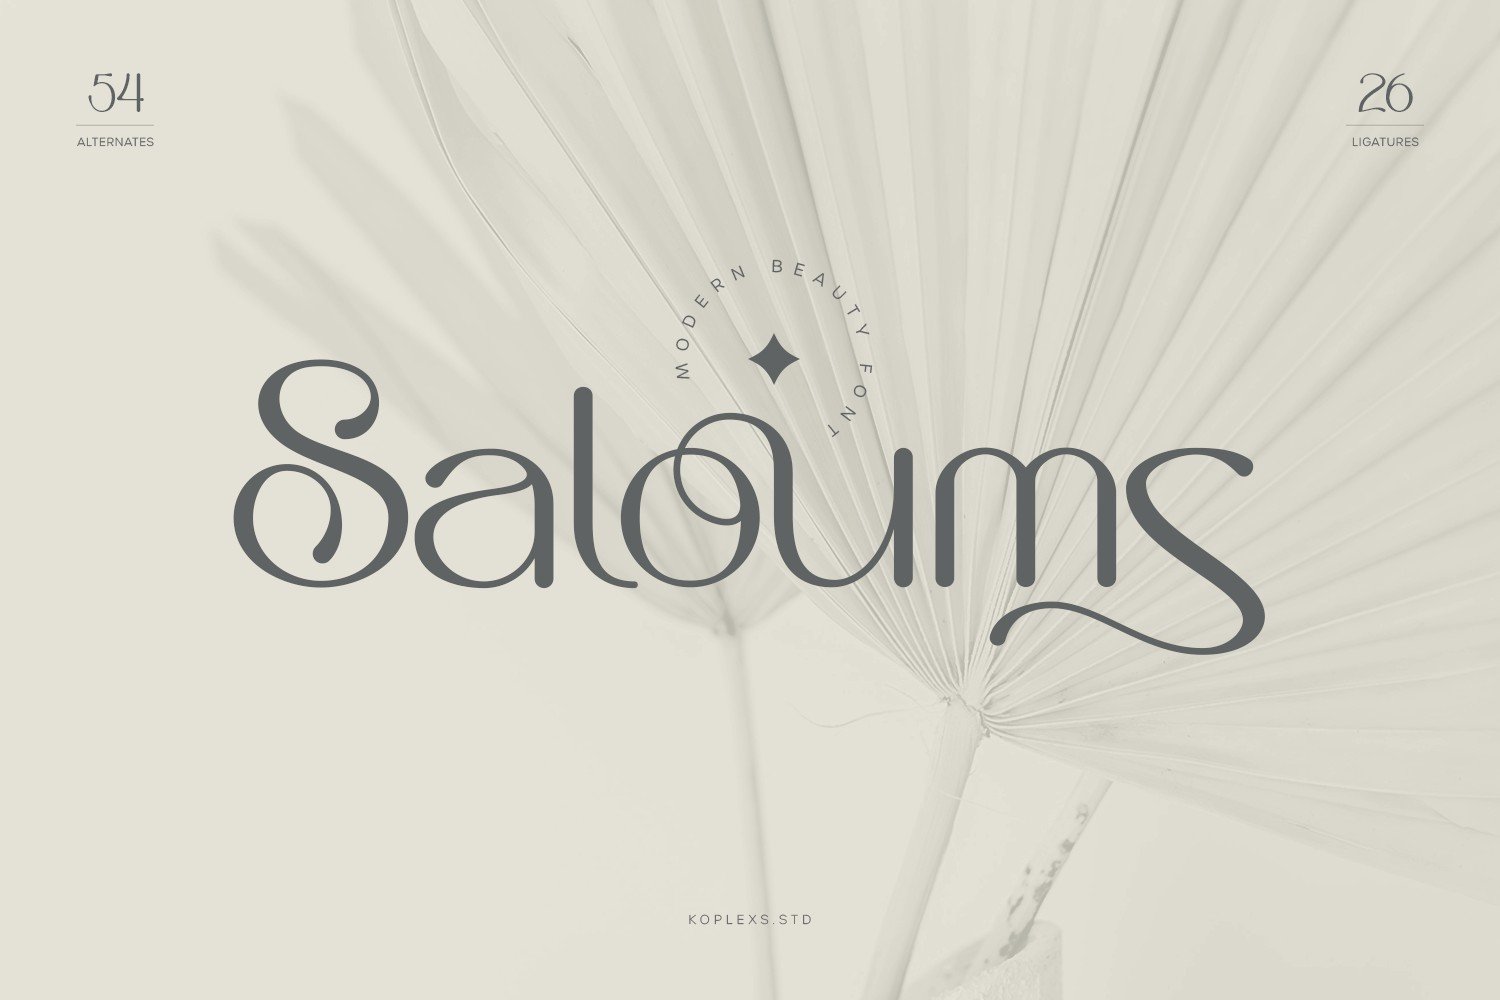 Saloums - Modern Sans Serif Font cover image.